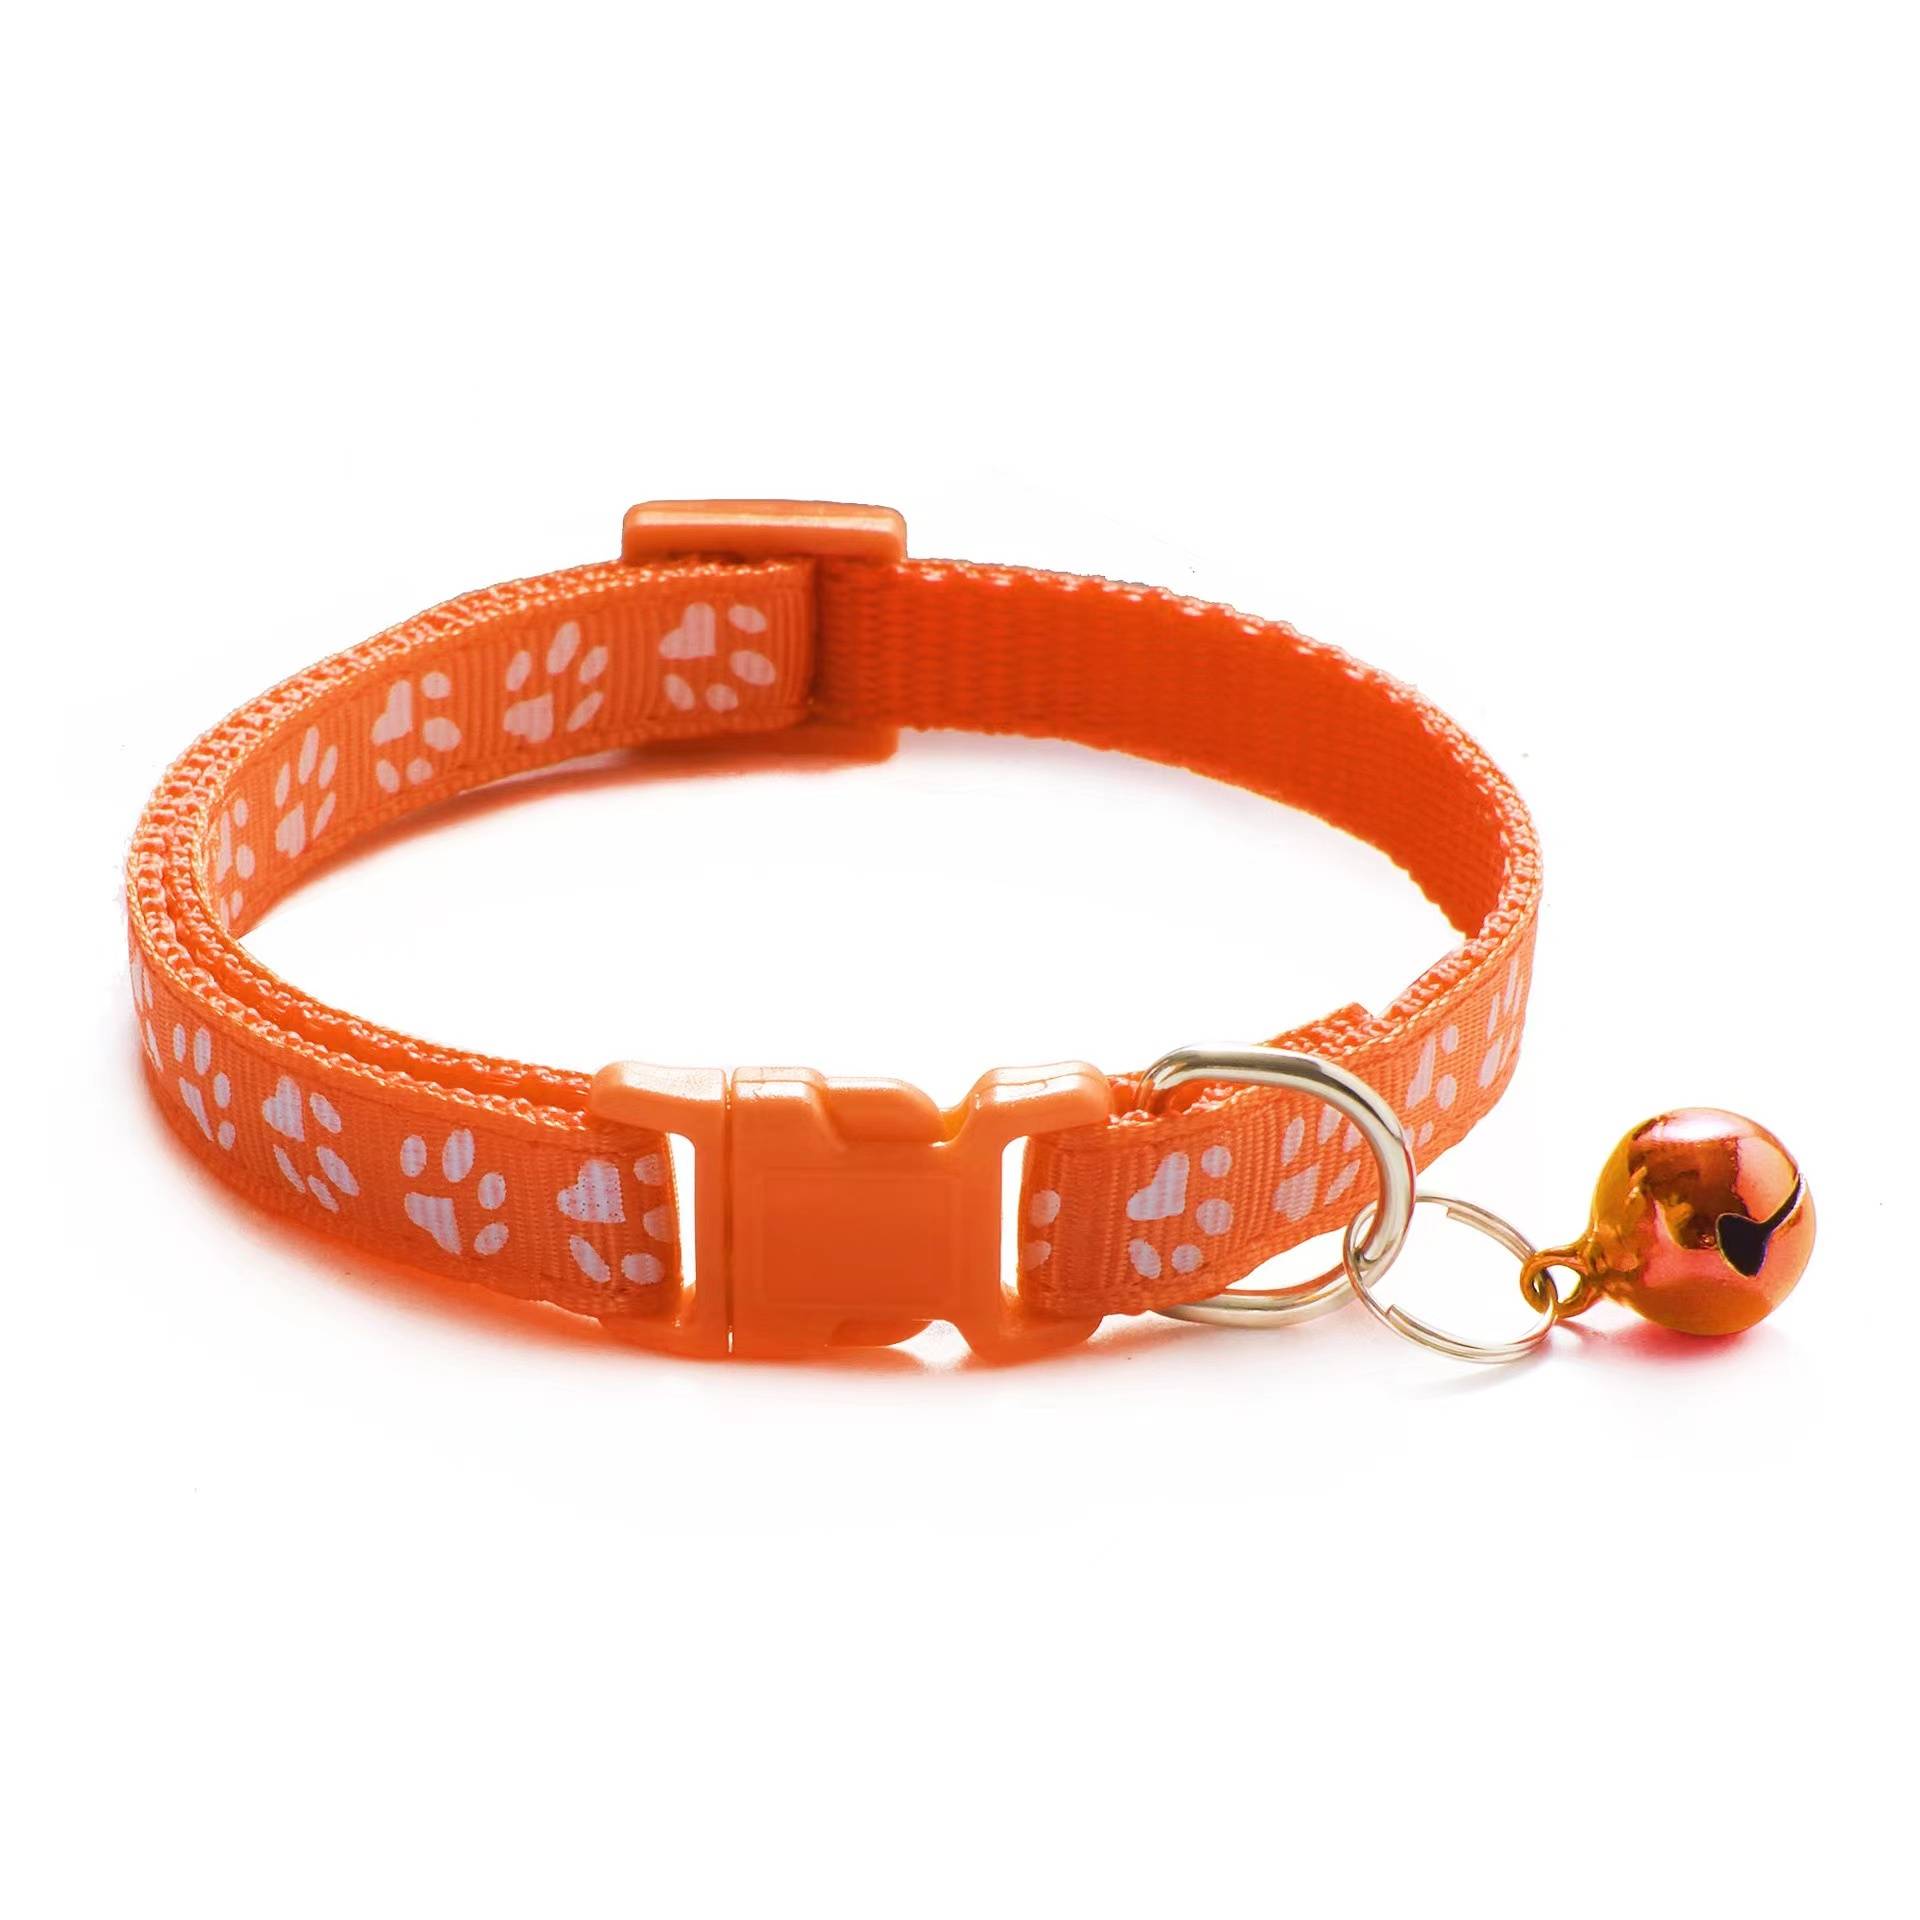 Adjustable Cat Collars - Orange - Cat collars